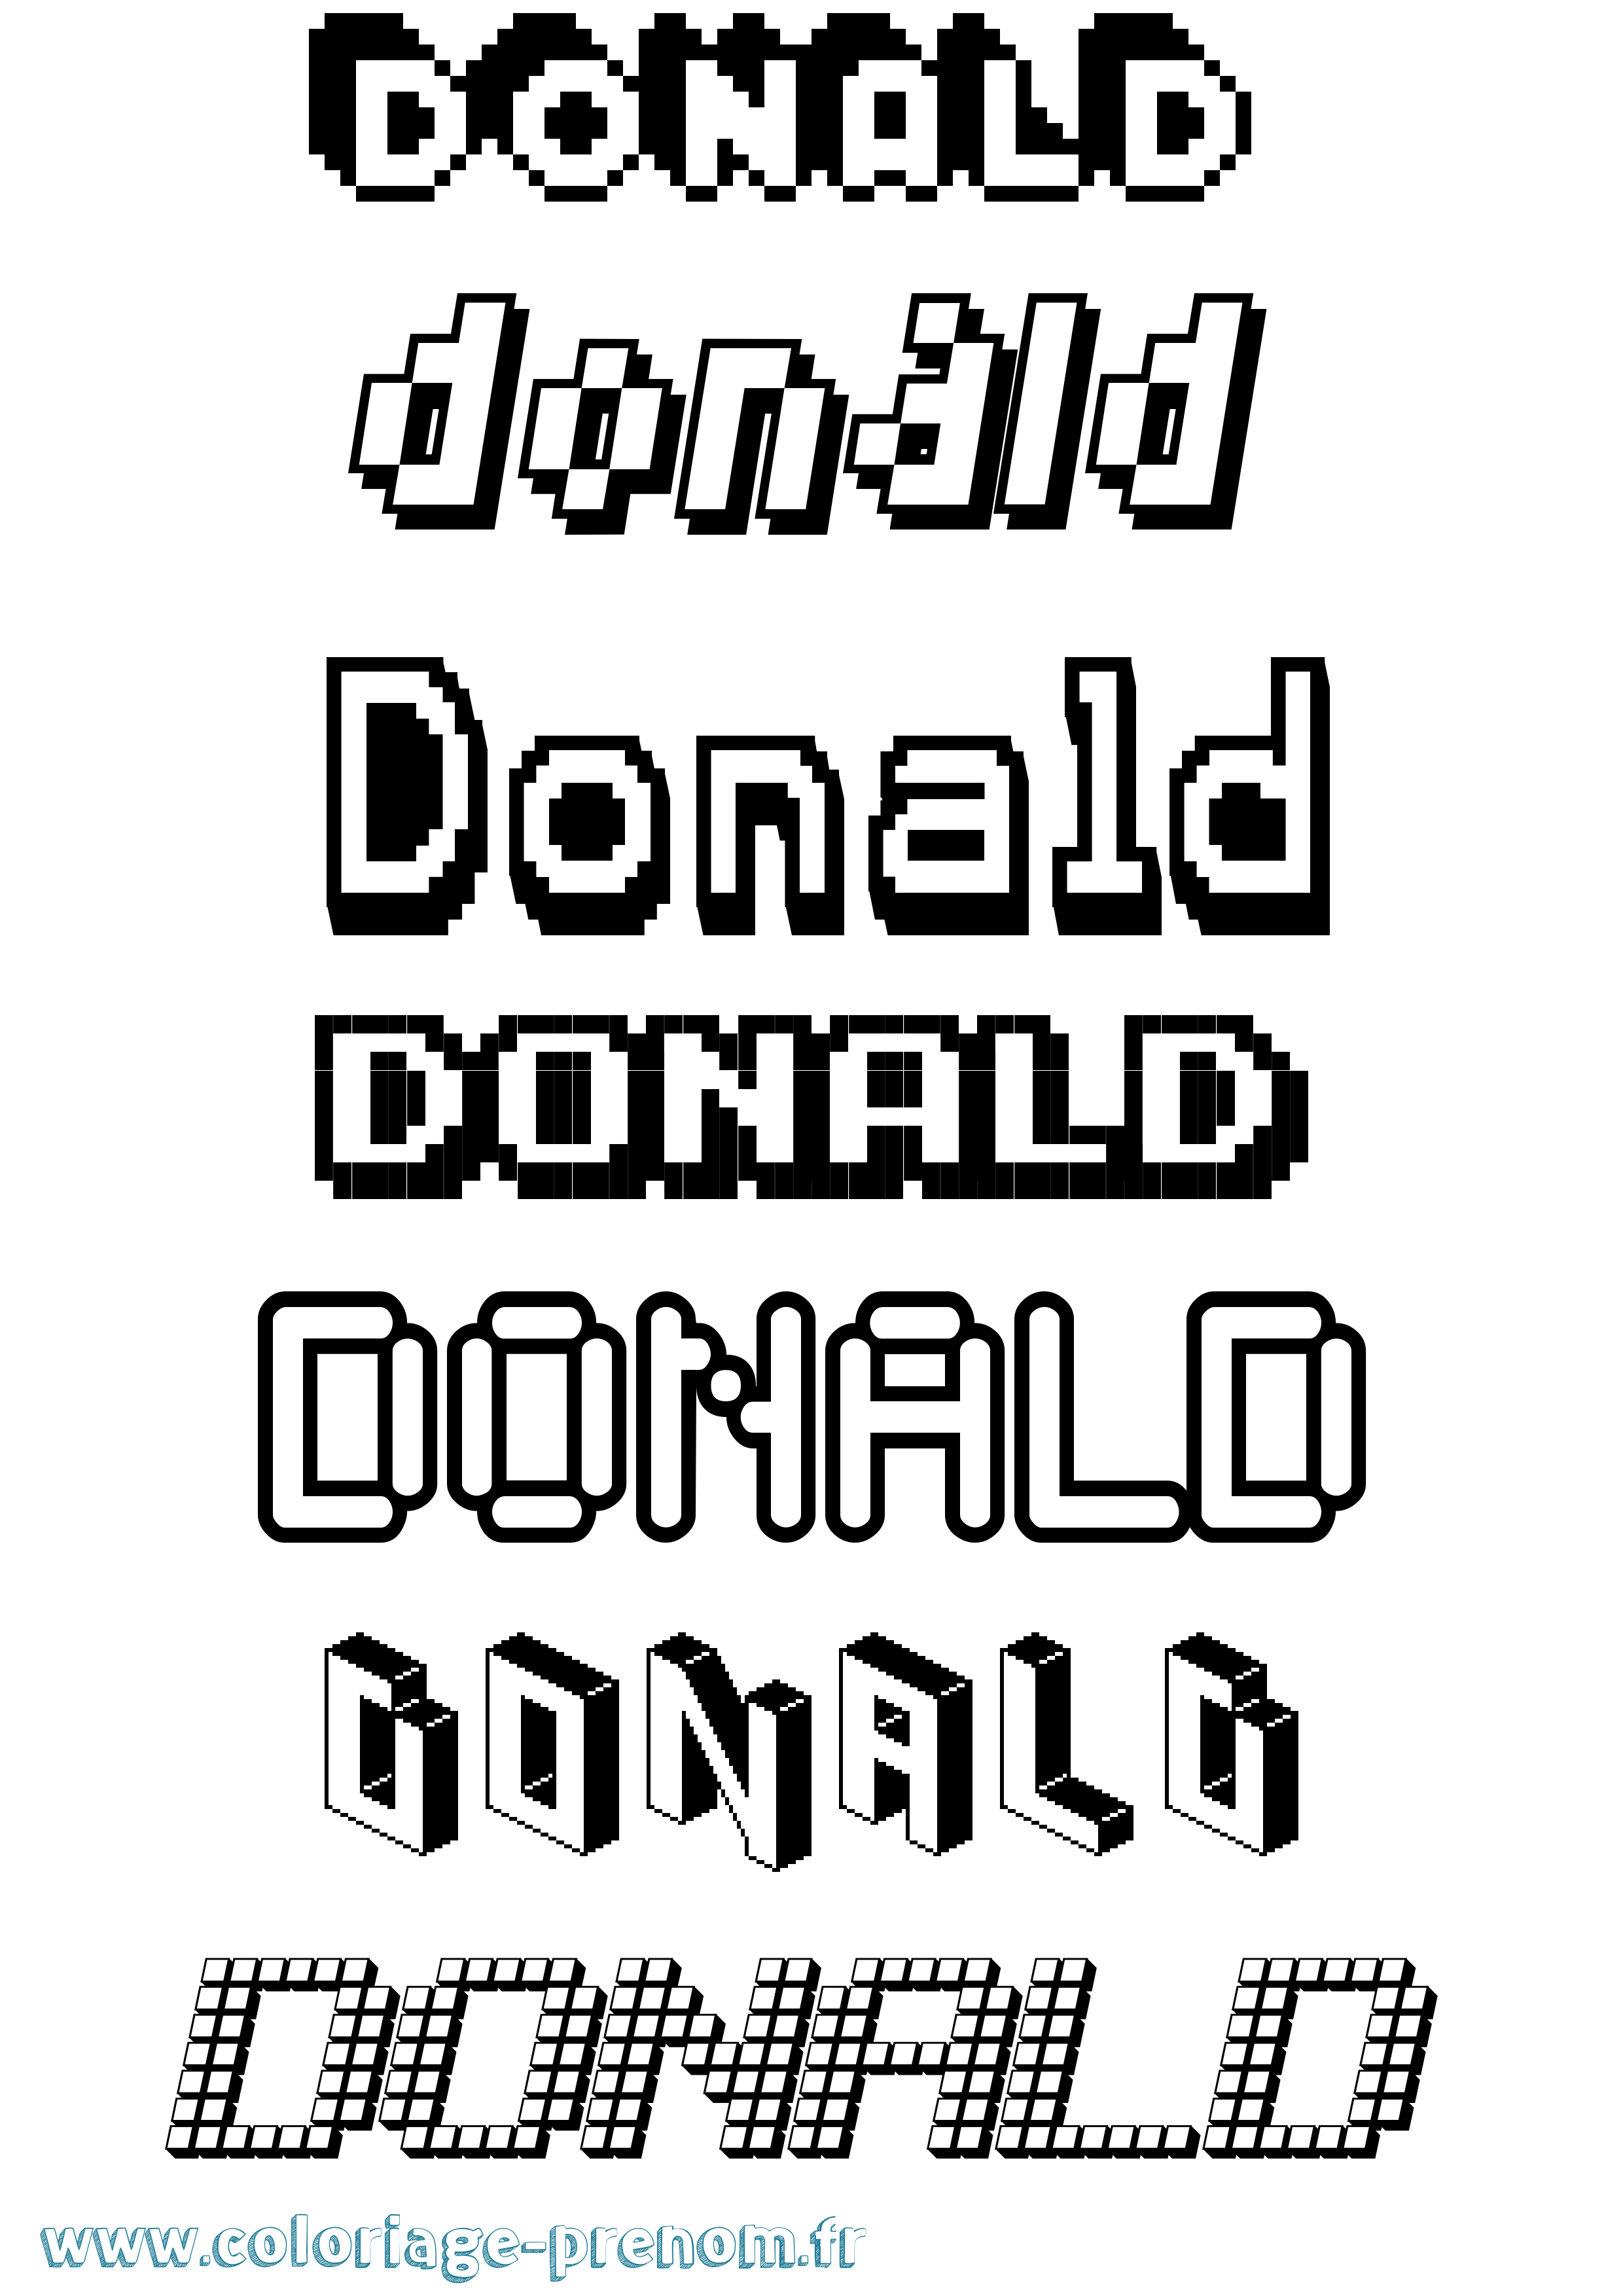 Coloriage prénom Donald Pixel